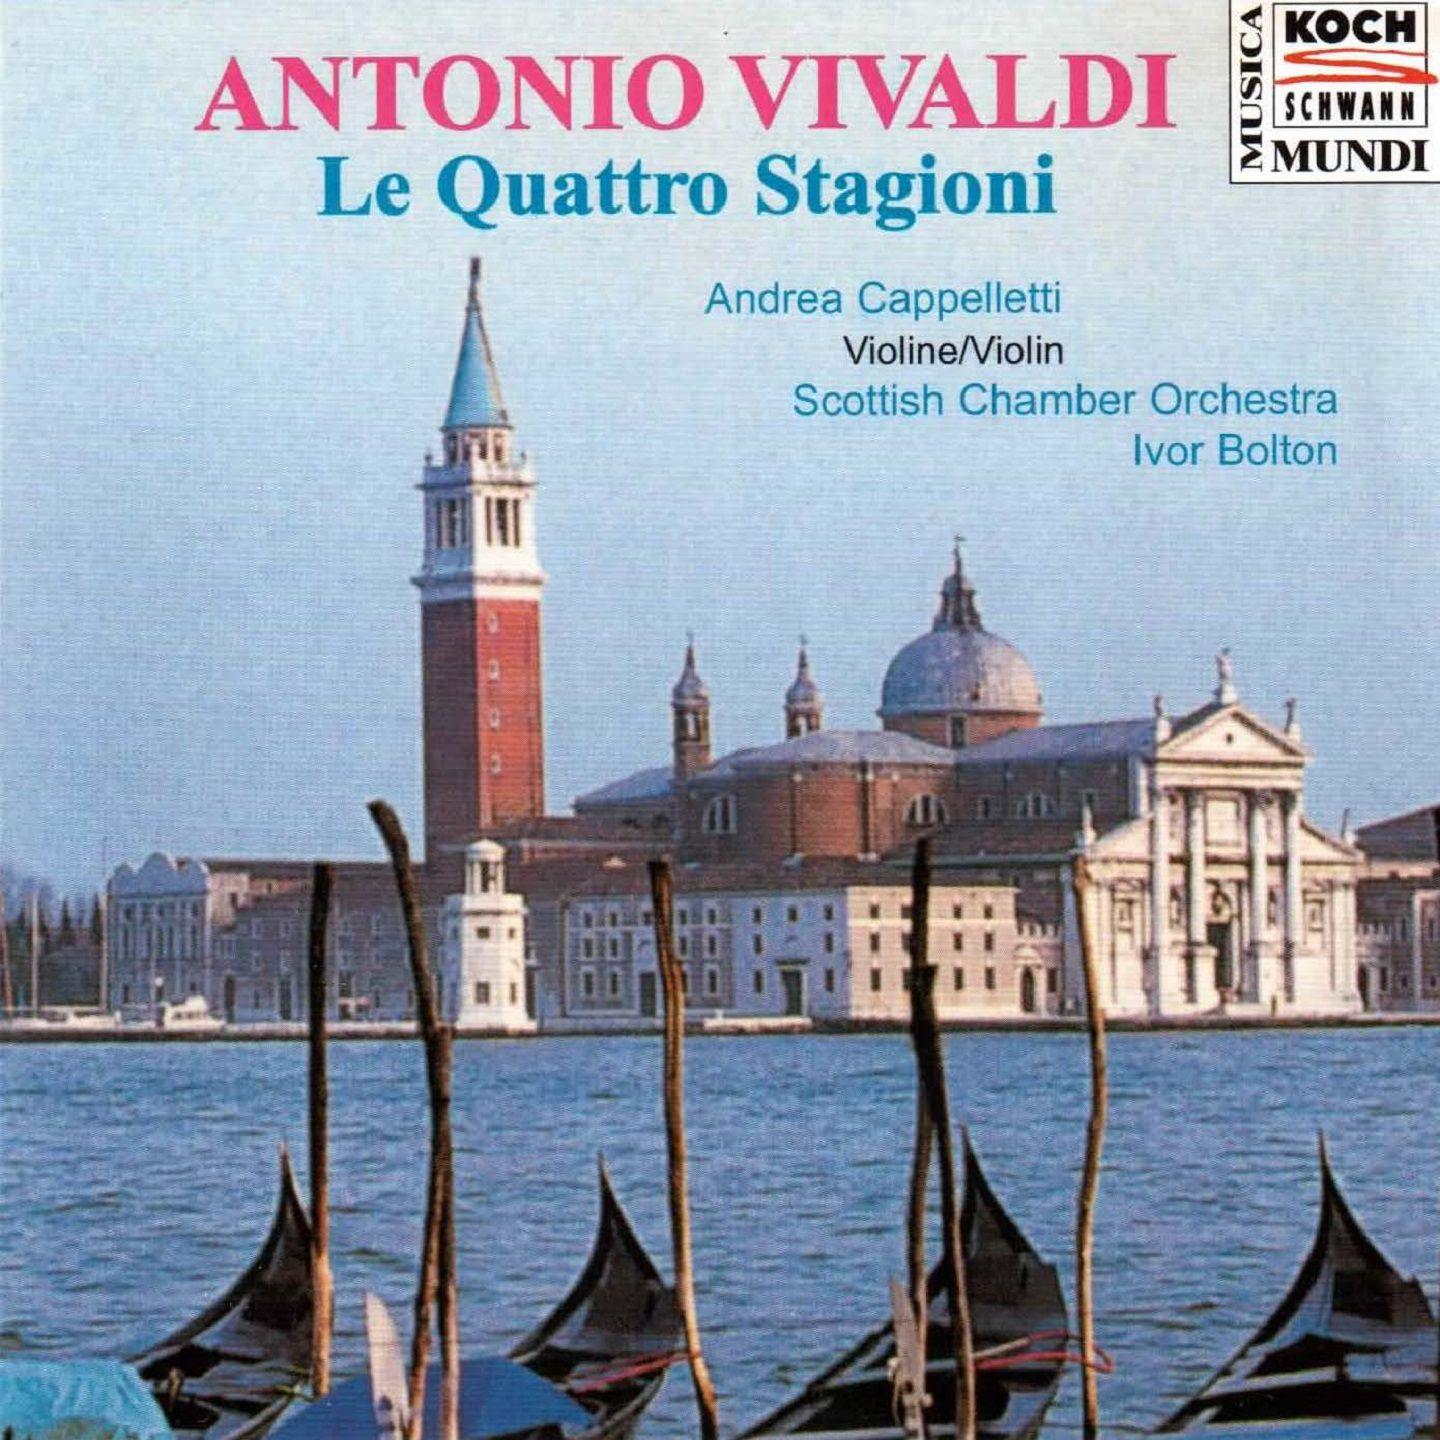 Concerto for Strings in G Major, RV 151 "Alla rustica": II. Adagio & III. Allegro